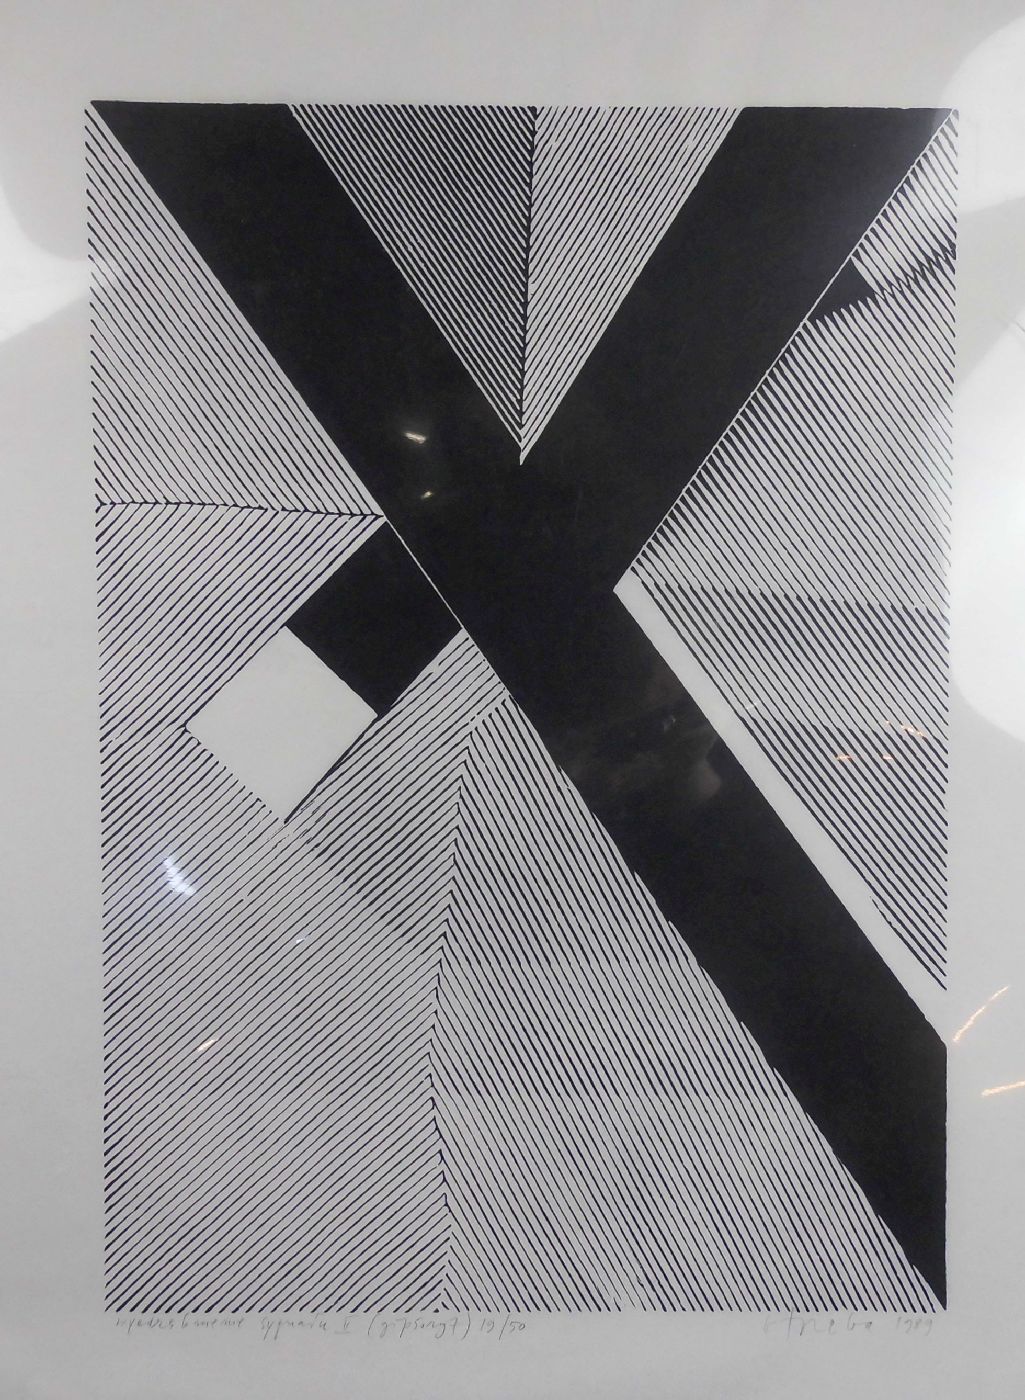 OTREBA, RYSZARD (geb. 1932), Lithographie auf Japanpapier: "Lineare Komposition", bezeichnet "Wyedra